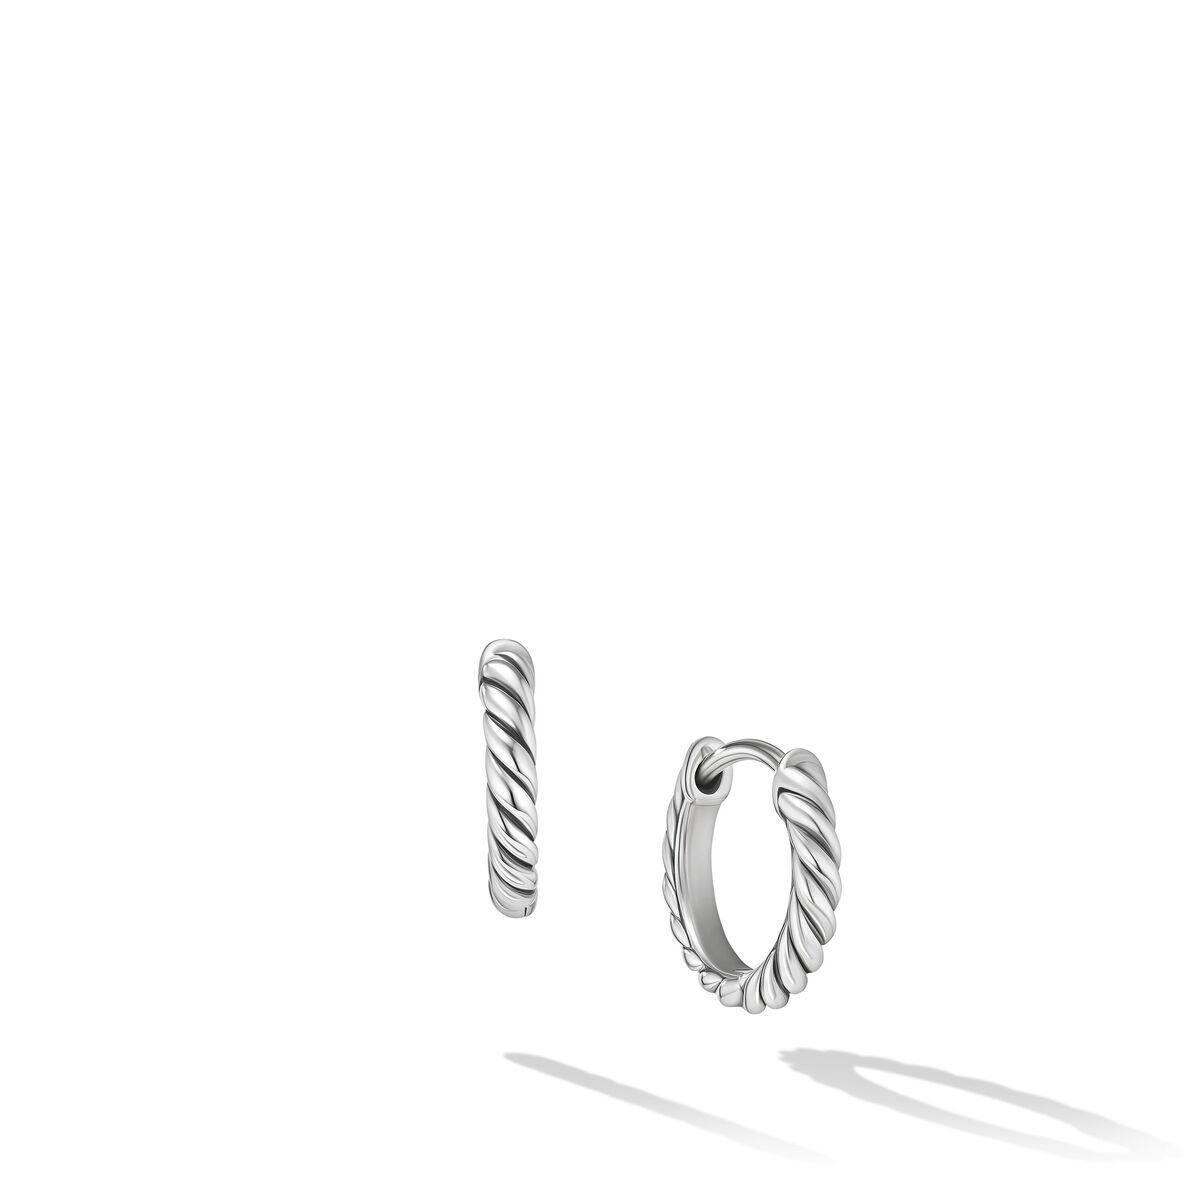 David Yurman Sculpted Cable Huggie Hoop Earrings in Sterling Silver